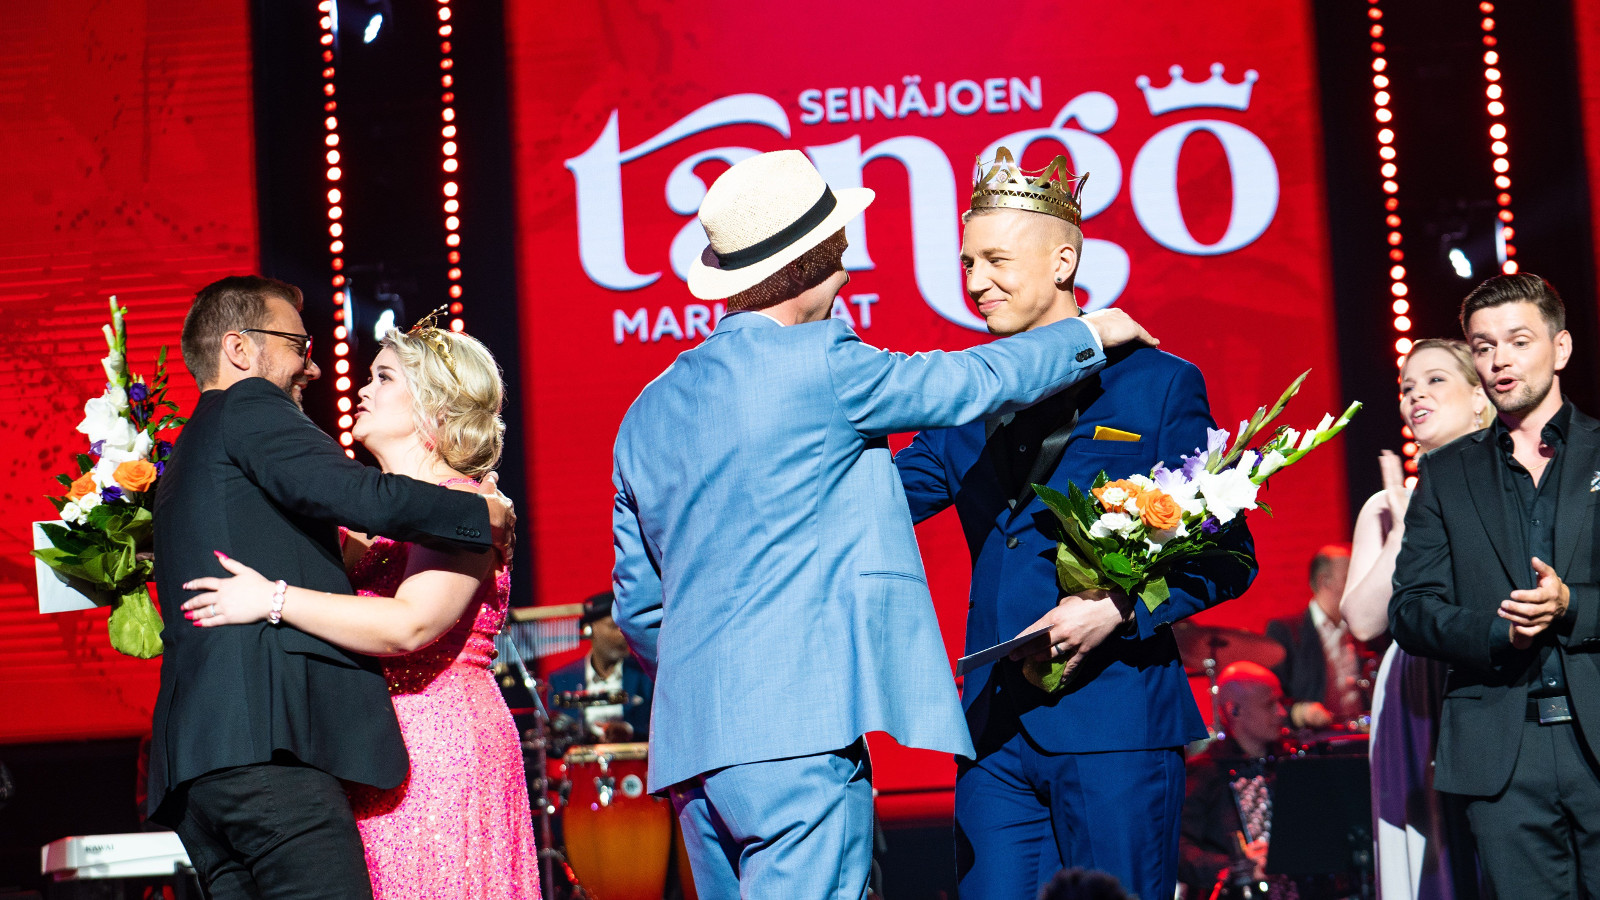 Kuvassa on menossa Tangomarkkinoiden voittajien onnittelut ja kukitus. Vasemmalla on Charlotta Saaren onnittelu ja halaus.  Hänellä on pinkki puku päällään.  Vieressä on Pasi Flodströmin onnittelut ja onnittelijalla on vaalean sininen puku.  Tausta on punainen ja seinällä lukee tango.